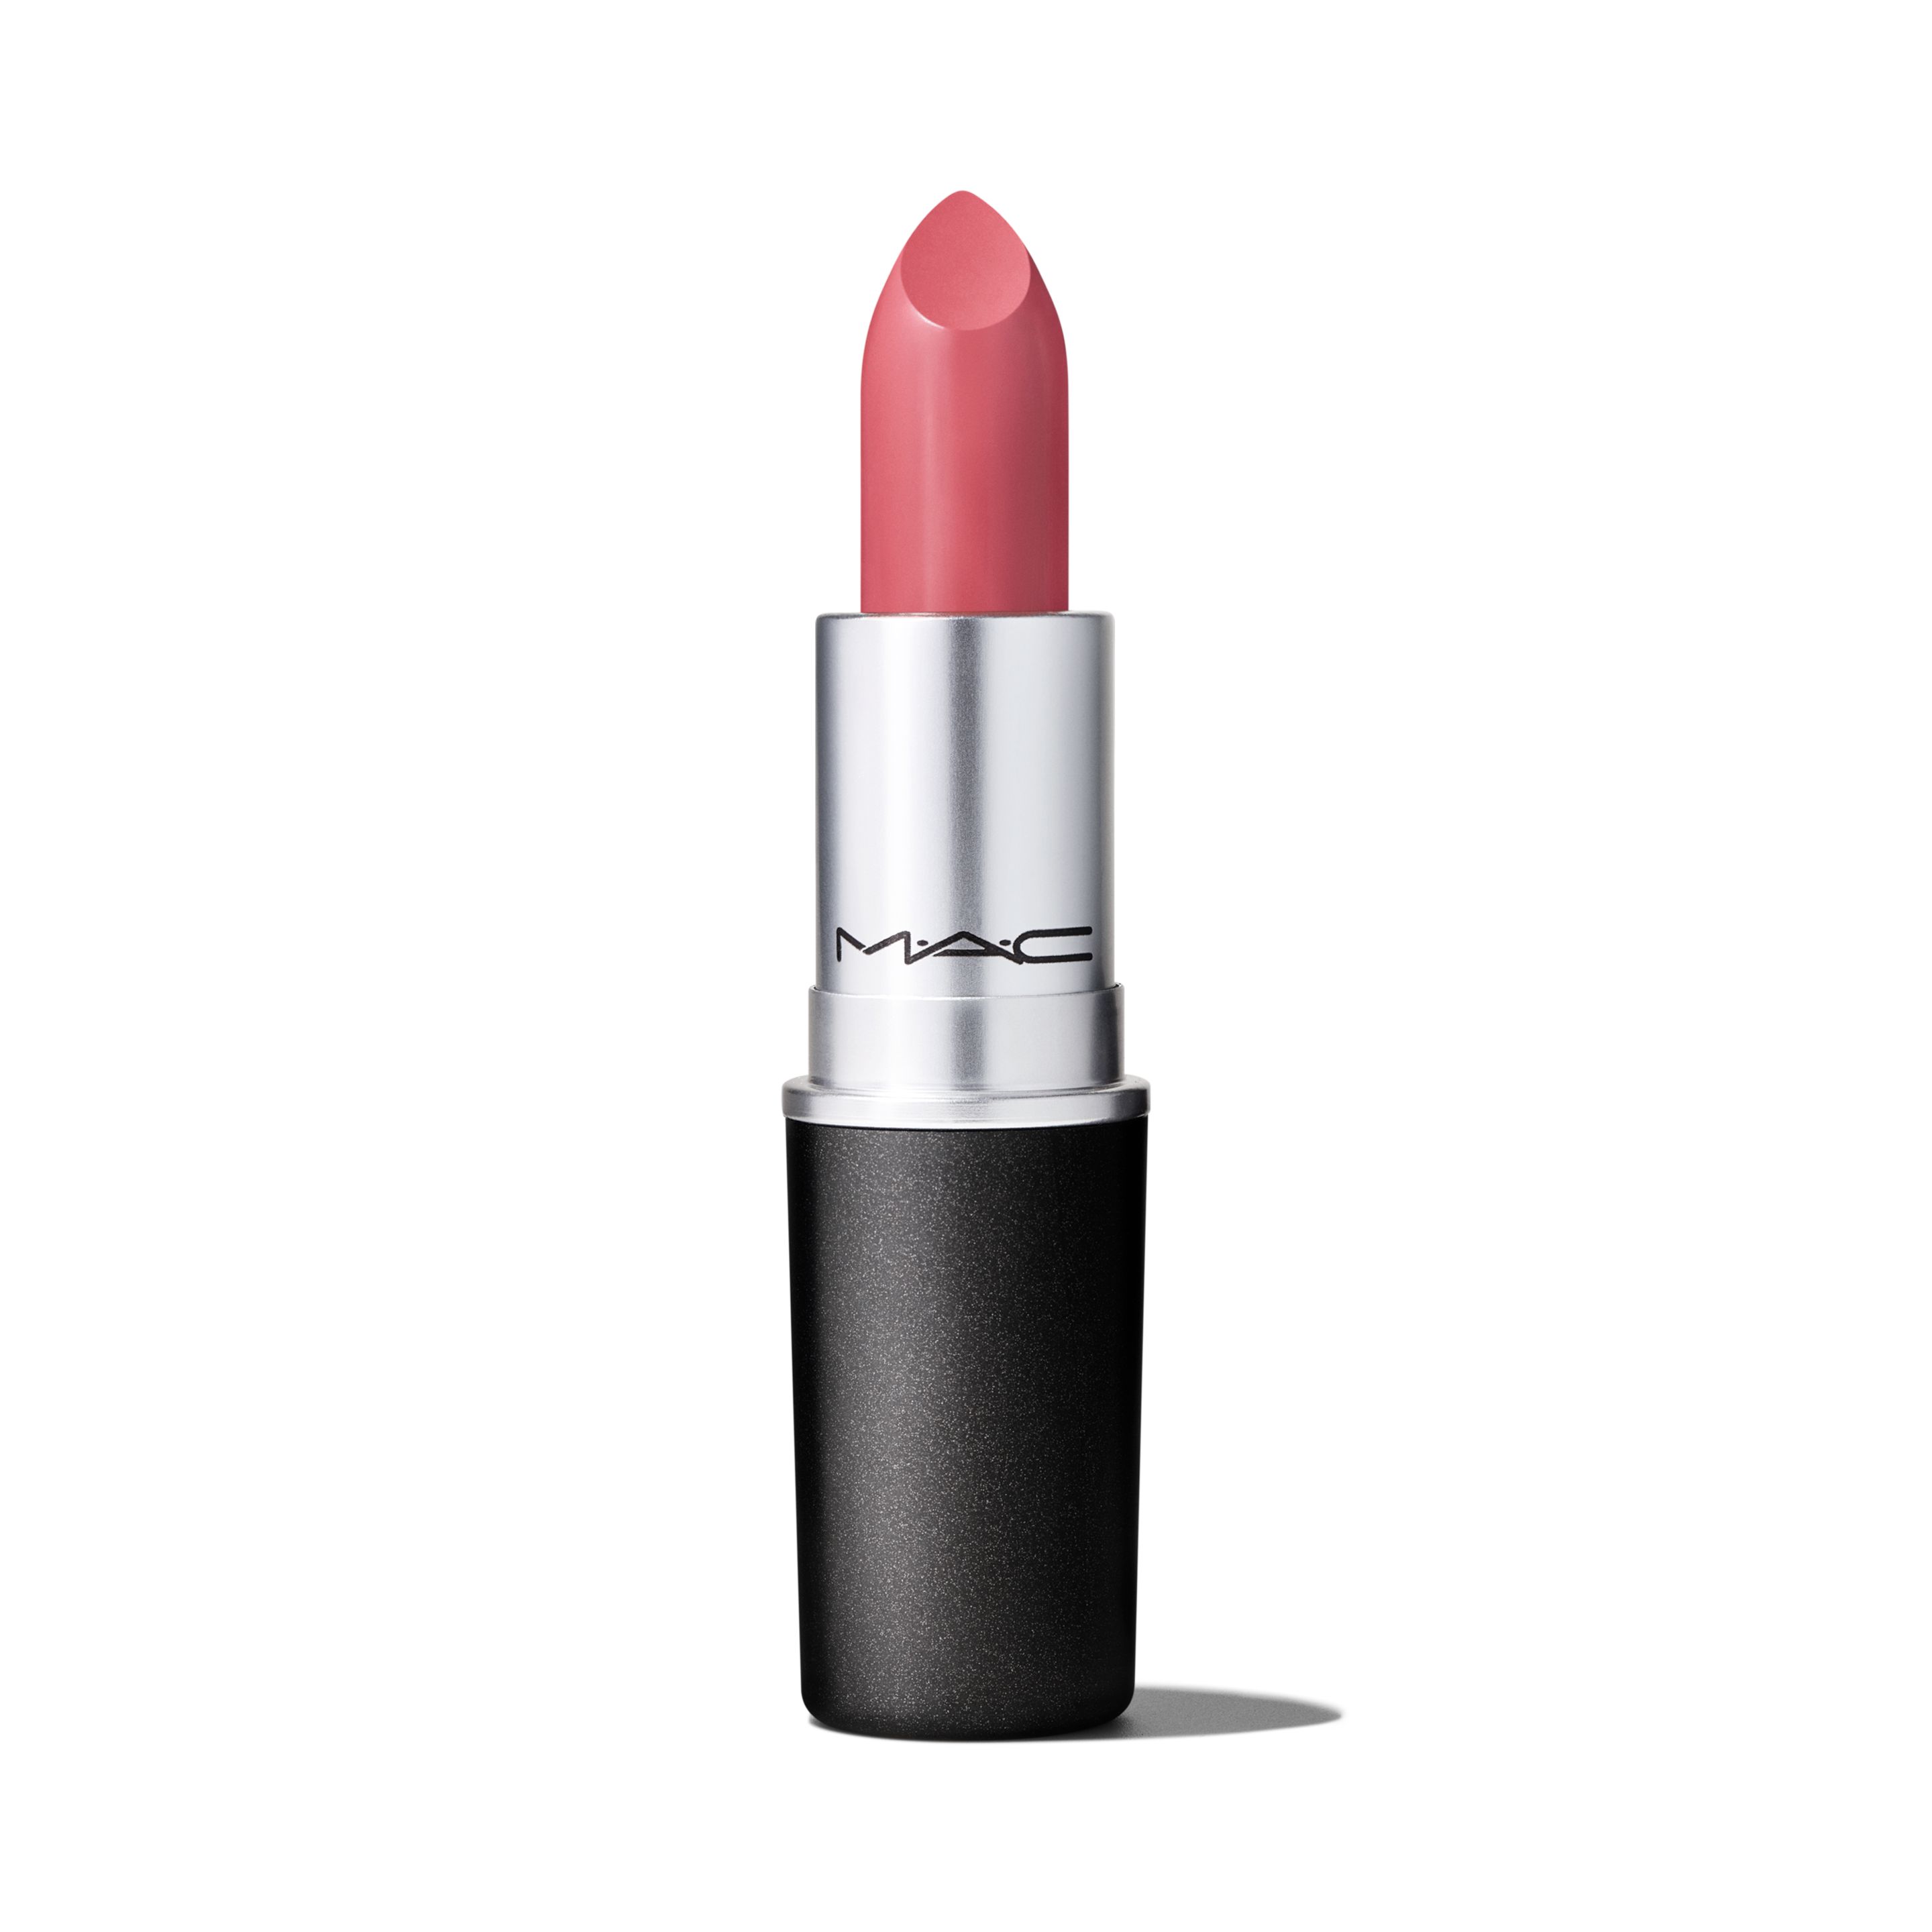 Помада для губ MAC Cosmetics Satin Lipstick кремовая, тон Brave, 3 г губная помада с атласным эффектом 732 grenadine clarins joli rouge satin lipstick